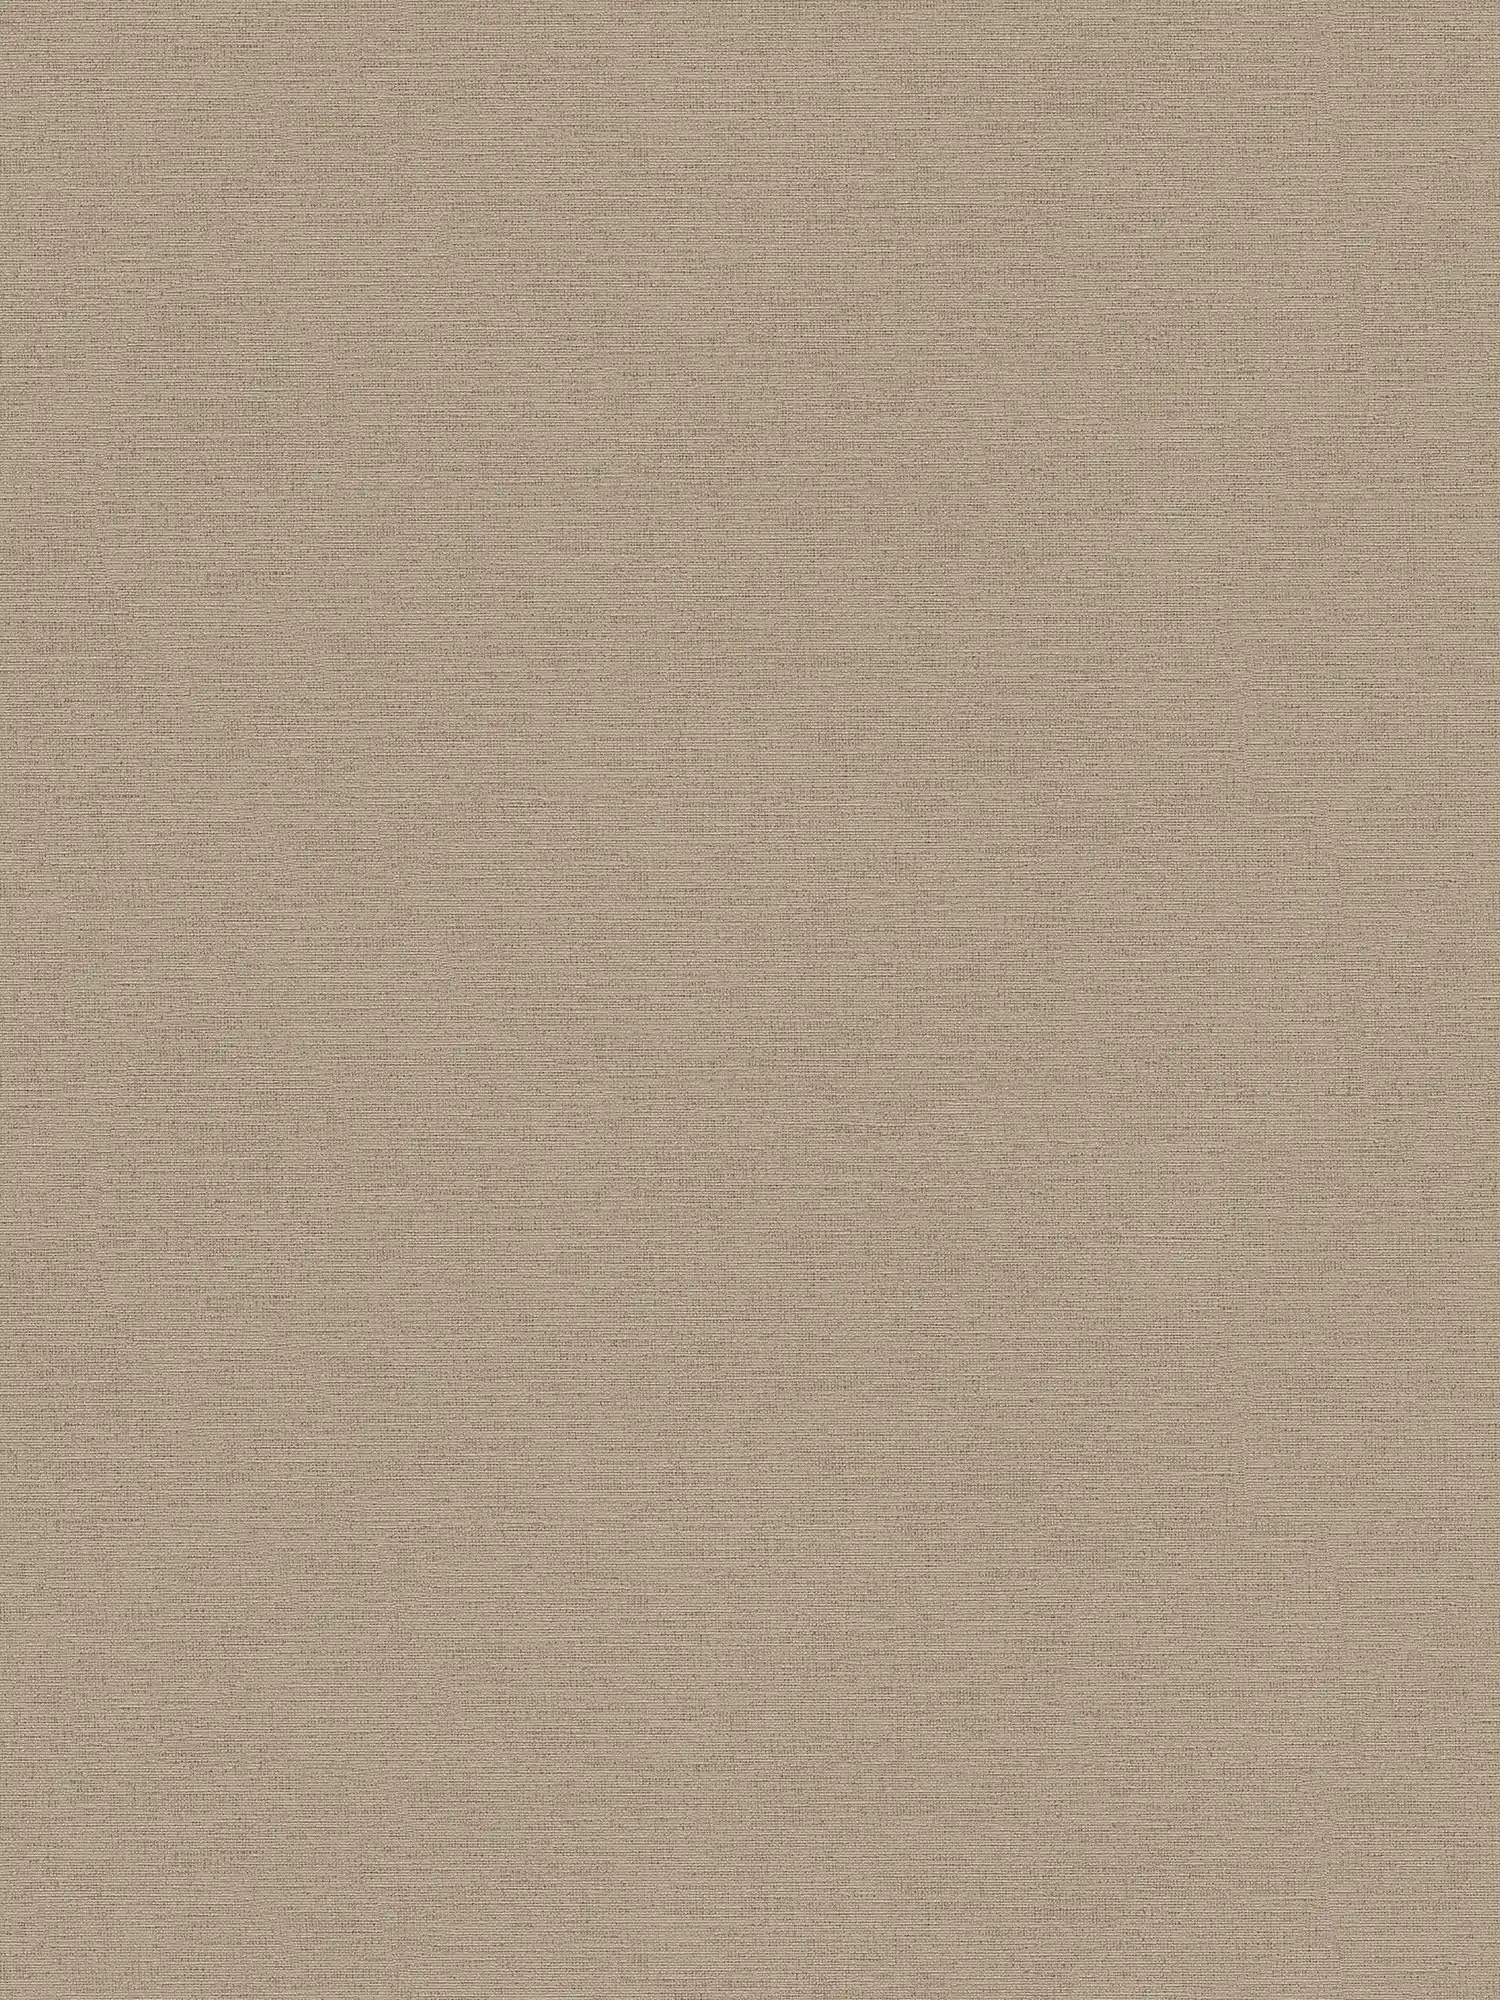 Linen look wallpaper brown beige in vintage design
